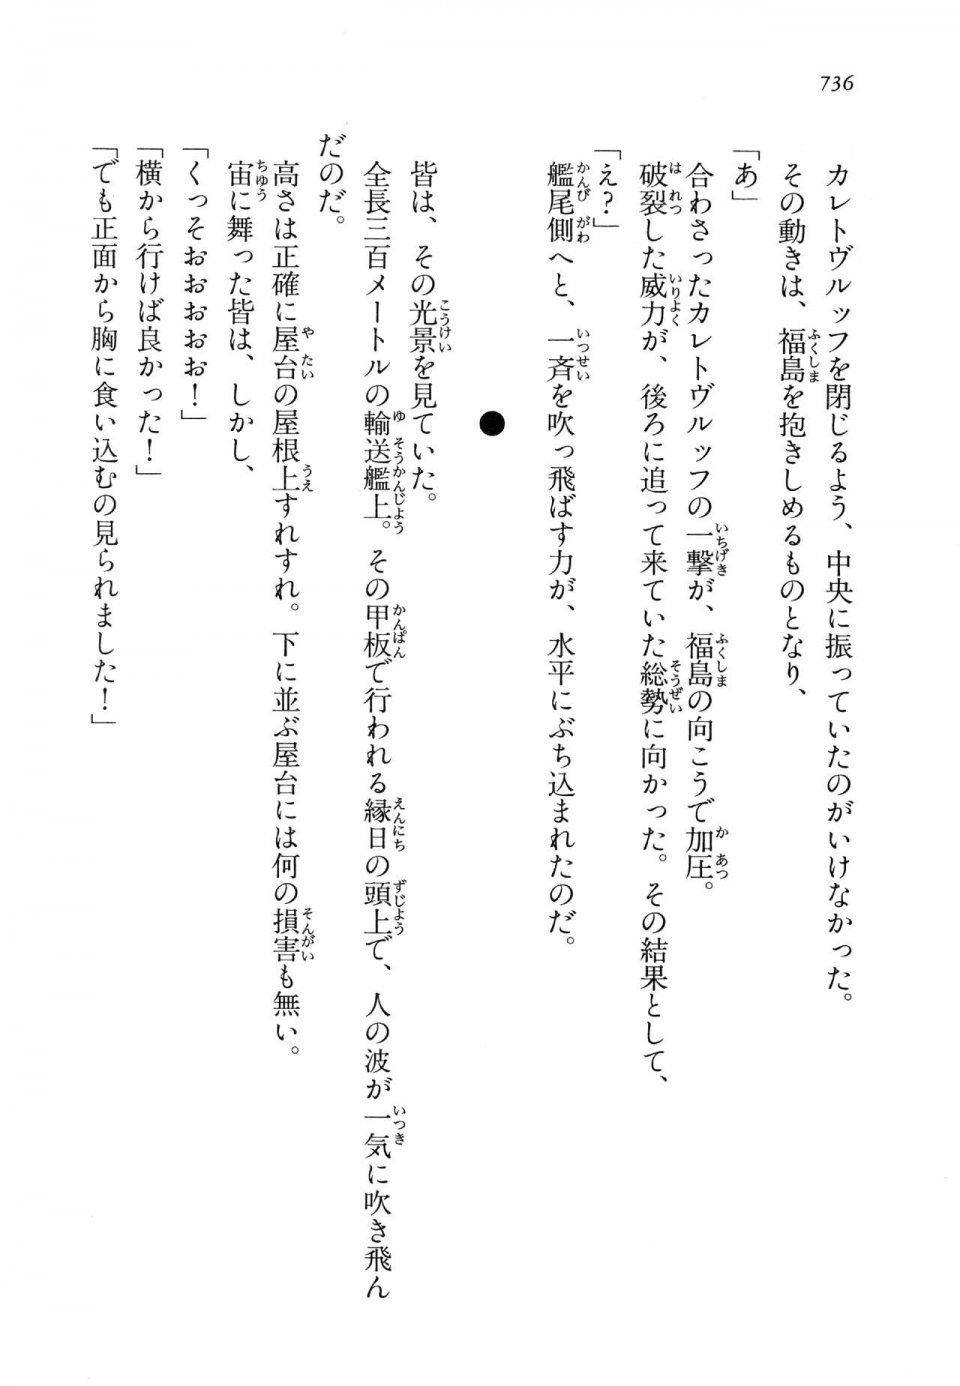 Kyoukai Senjou no Horizon LN Vol 14(6B) - Photo #736